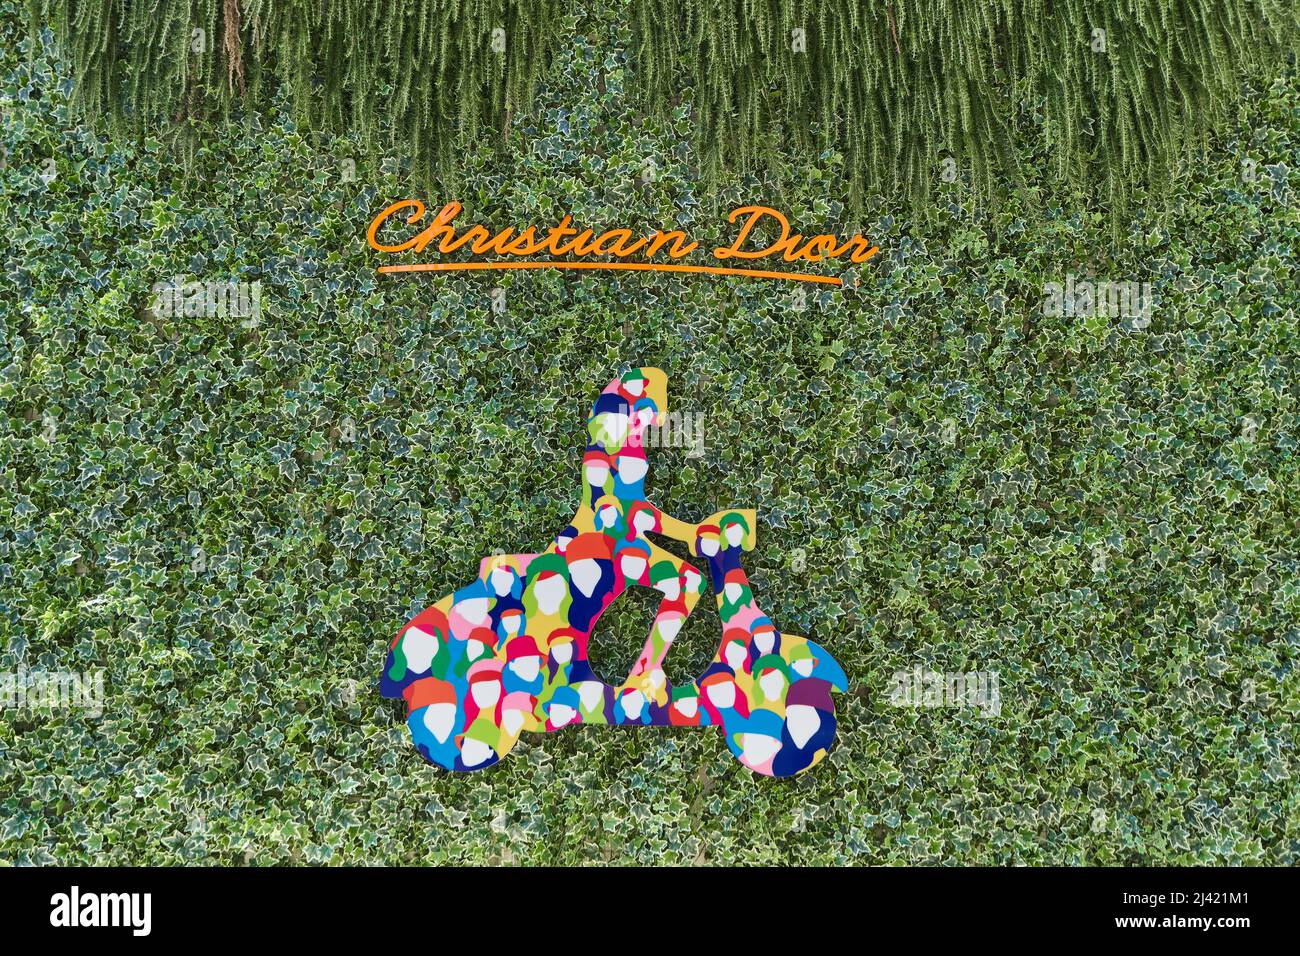 TIVAT, MONTENEGRO - 15. JULI 2021: Christian Dior Markenschild an einer mit Efeu bewachsenen Wand Stockfoto